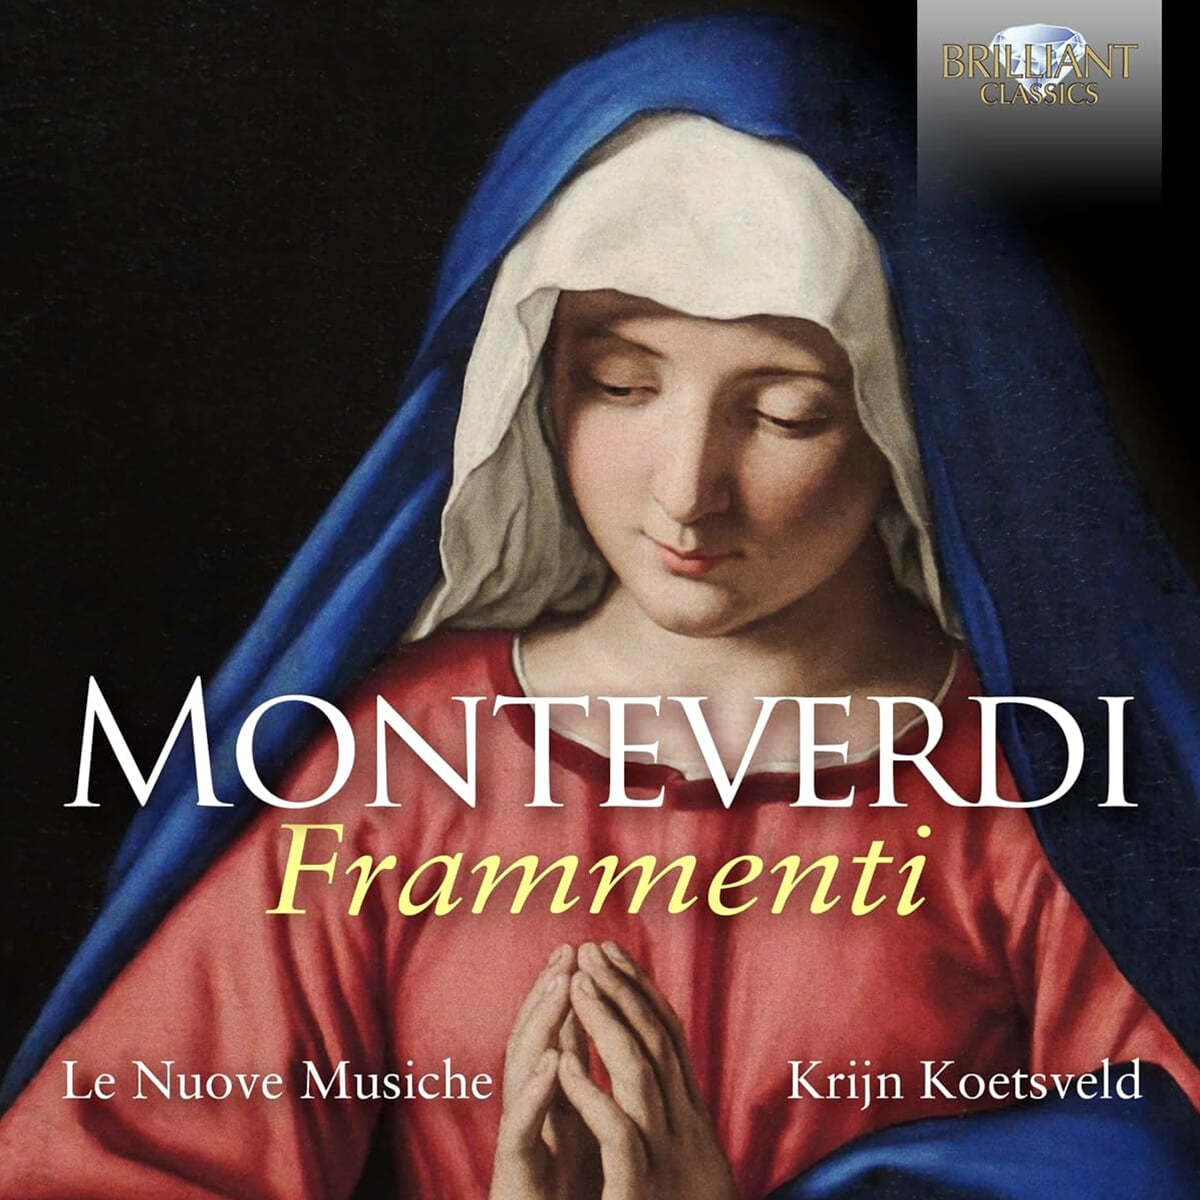 Le Nuove Musiche 몬테베르디: 프라멘티 (Monteverdi: Frammenti)